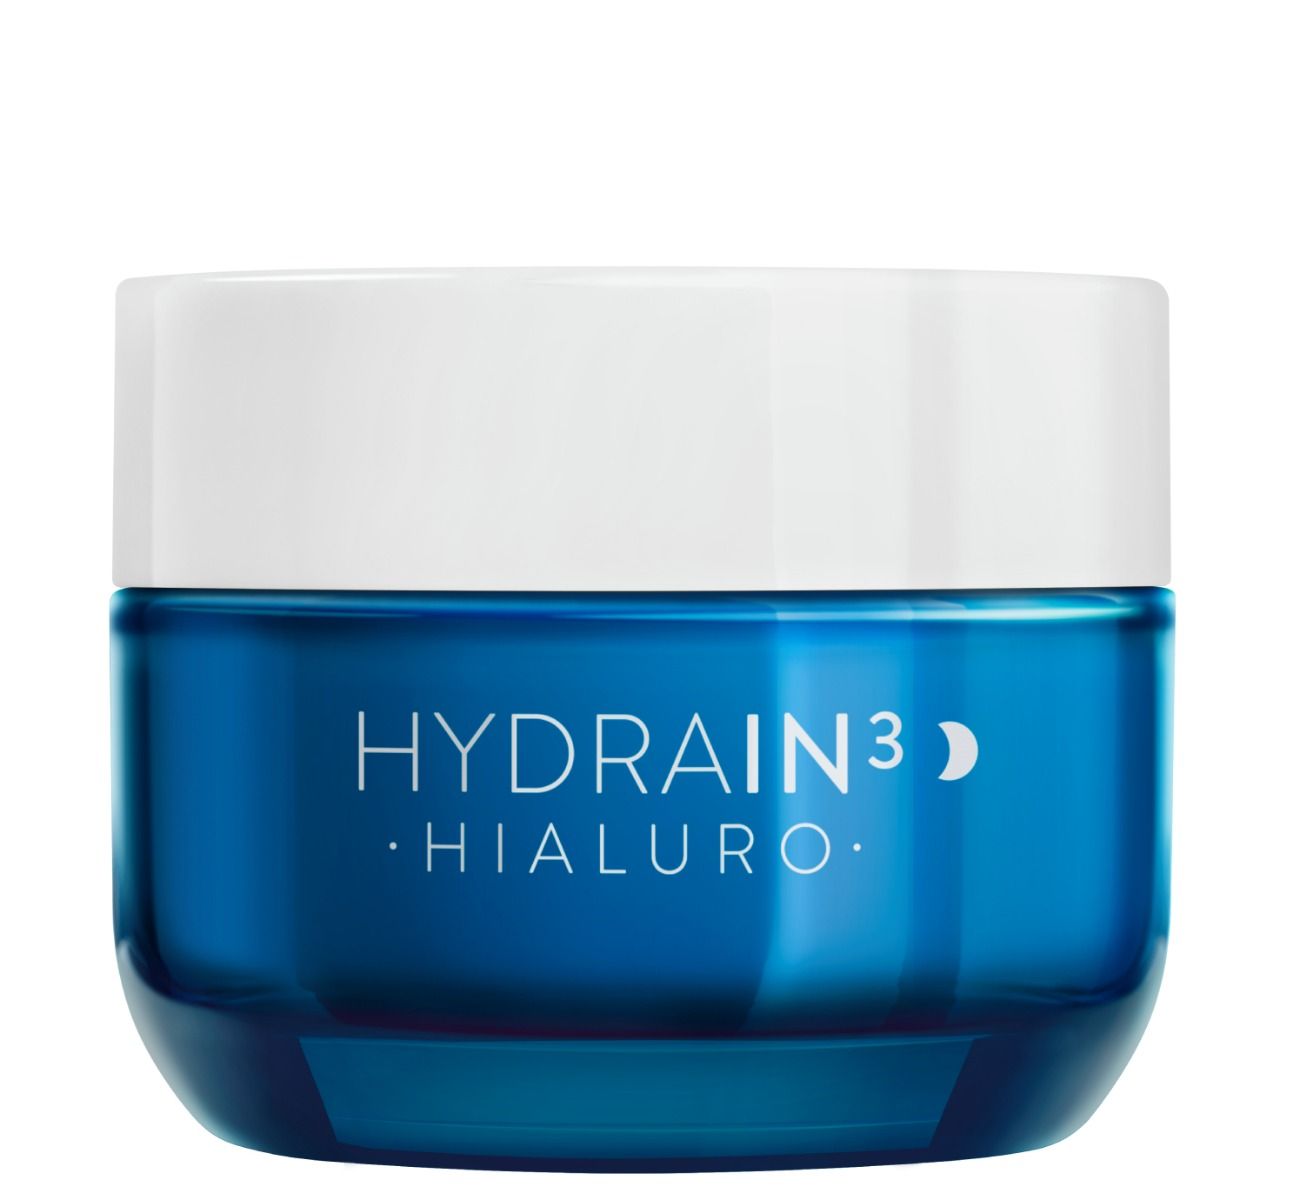 Dermedic Hydrain3 Hialuro крем для лица на ночь, 50 ml dermedic увлажняющий тонер 200 мл dermedic hydrain3